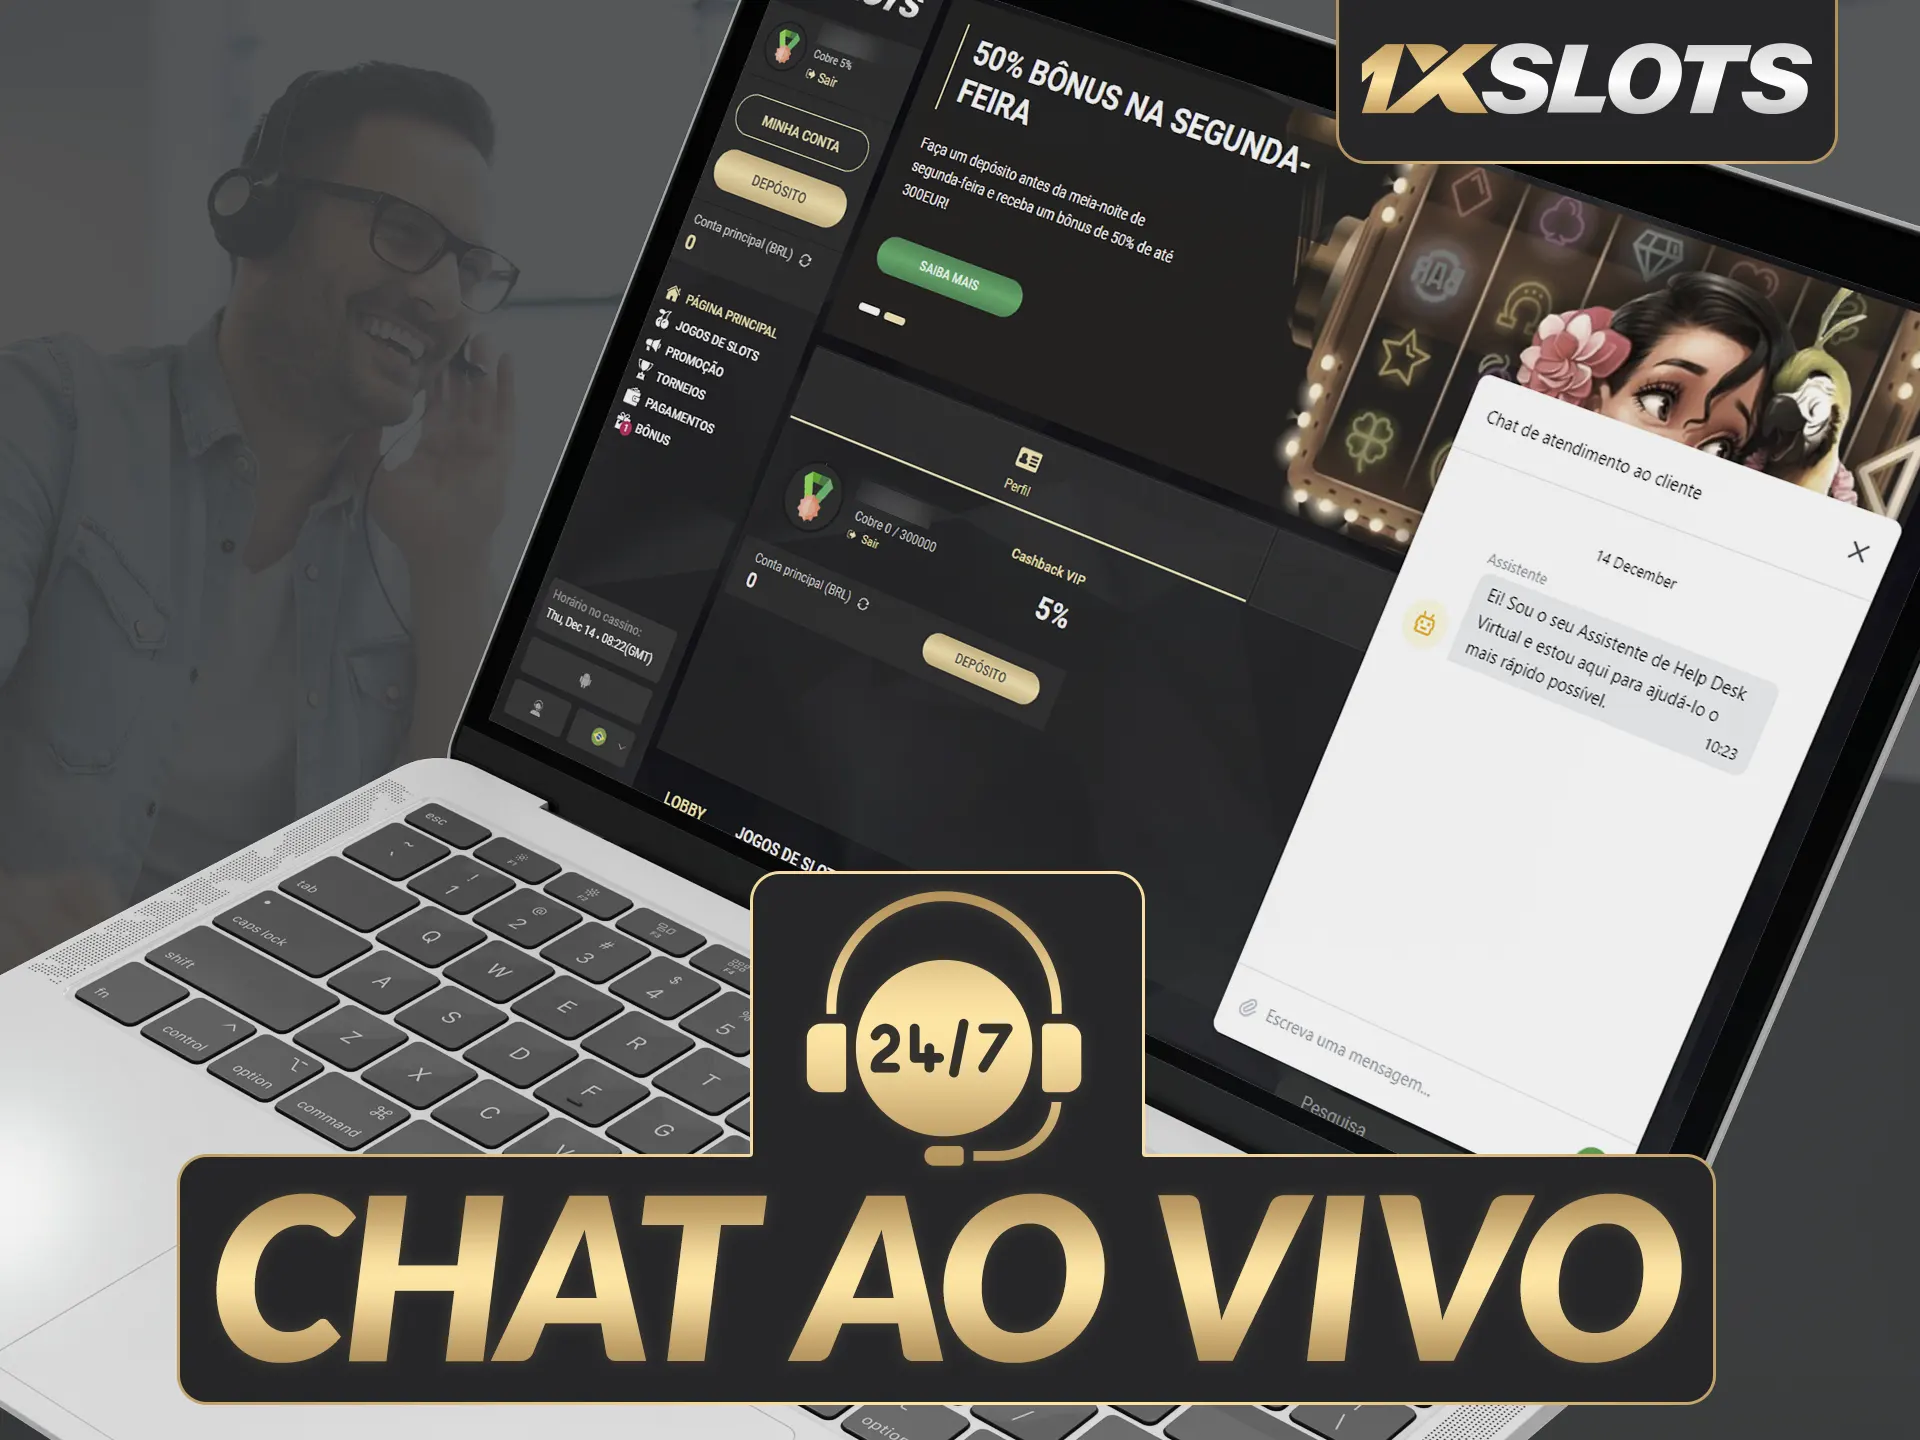 Chat ao vivo 24/7, suporte em português, fácil contato via ícone.